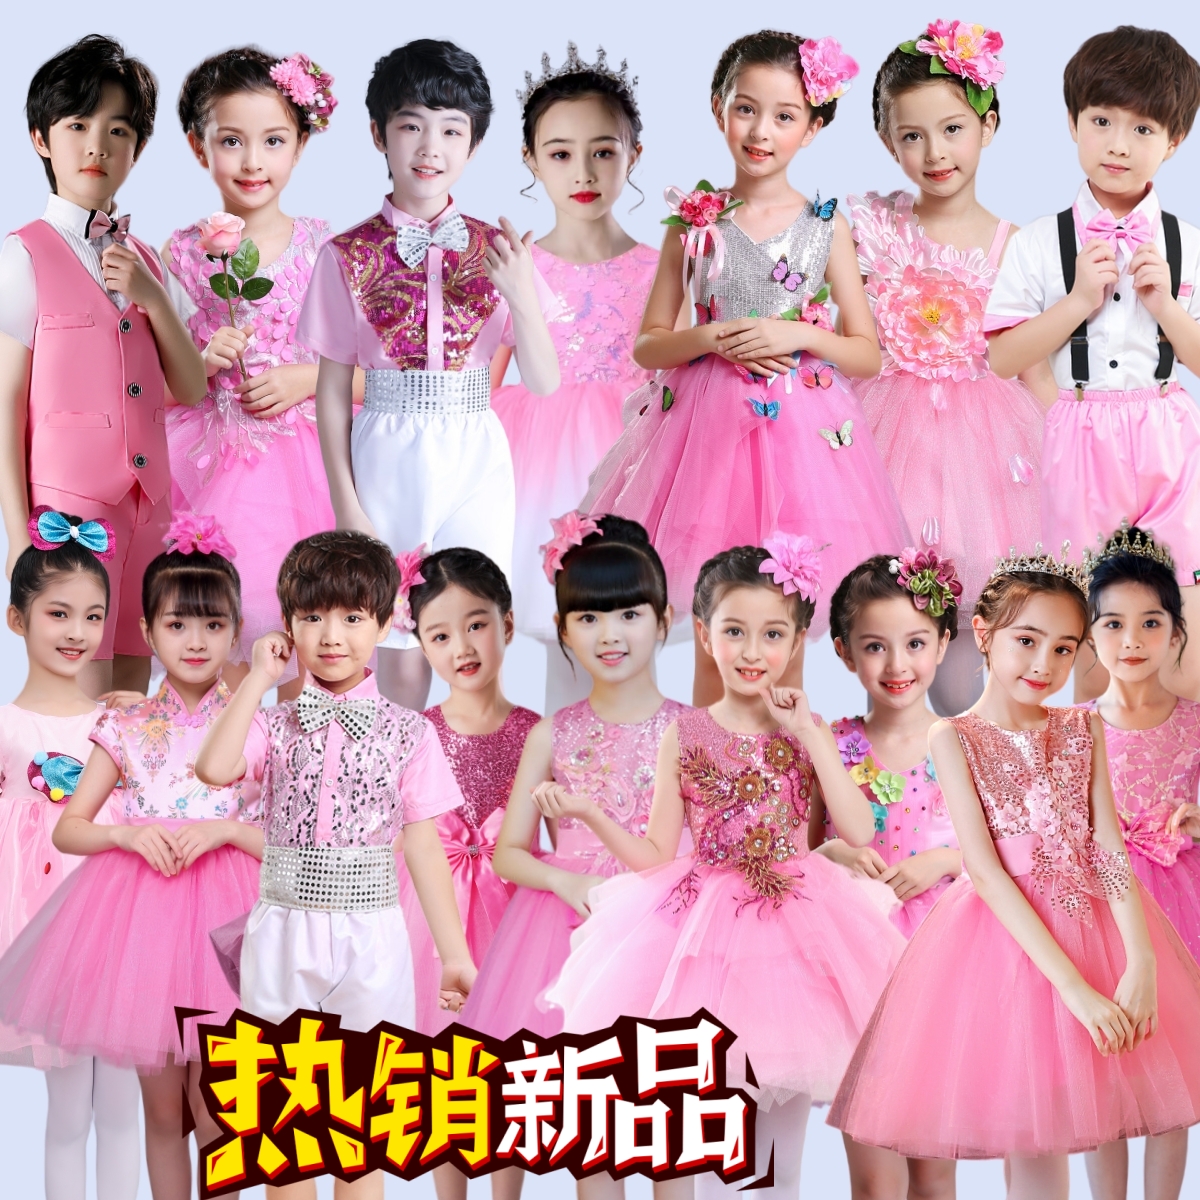 六一儿童演出服女童公主裙幼儿园跳舞蓬蓬裙粉色亮片纱裙舞蹈服装